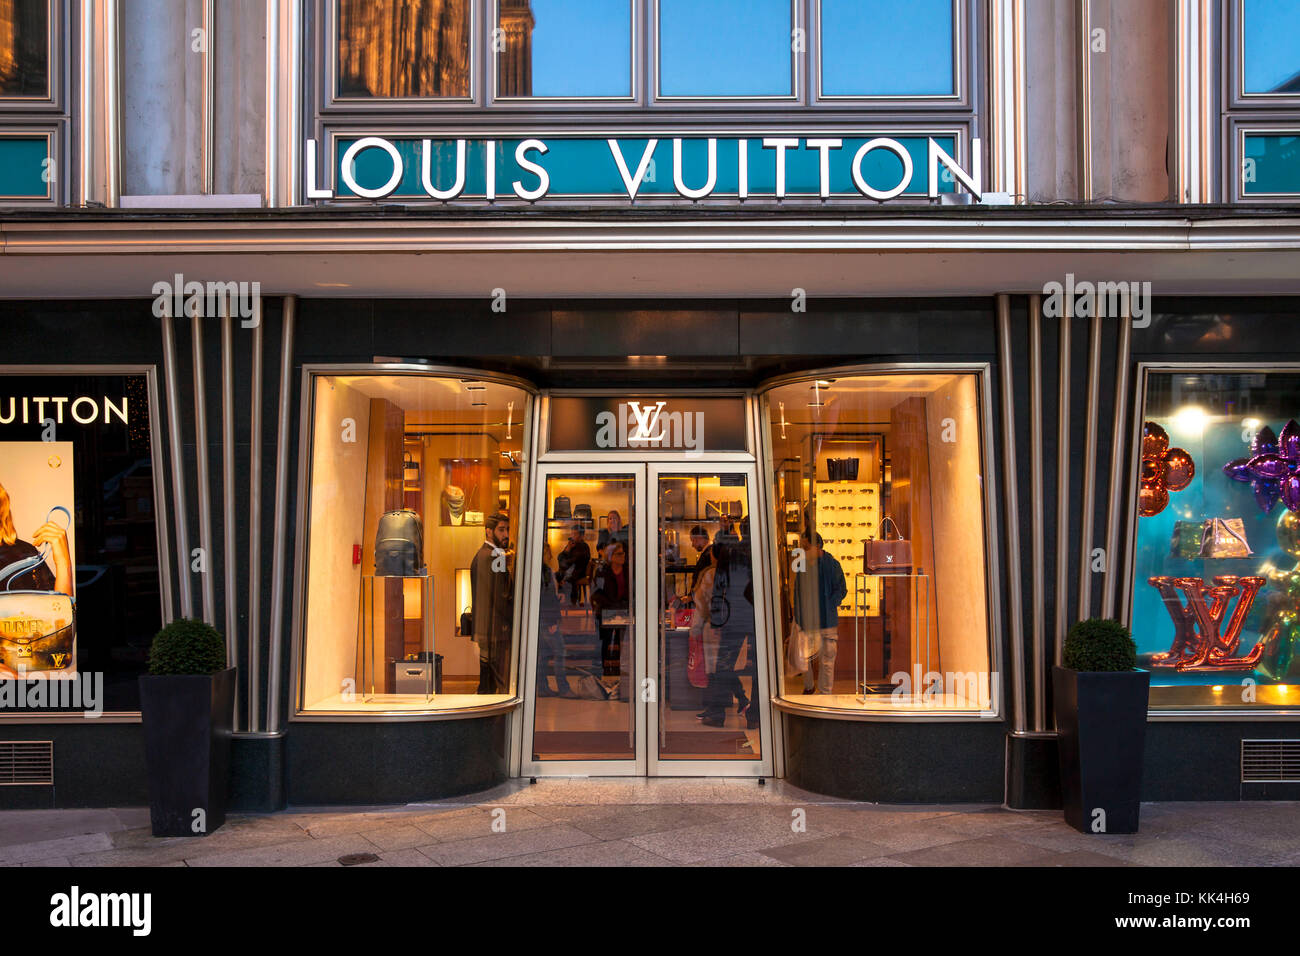 Allemagne, Rhénanie-du-Nord-Westphalie, Cologne, le magasin Louis Vuitton à la maison d'or Blau près de la cathédrale. Allemagne, Nordrhein-Westfalen, Koeln, Banque D'Images